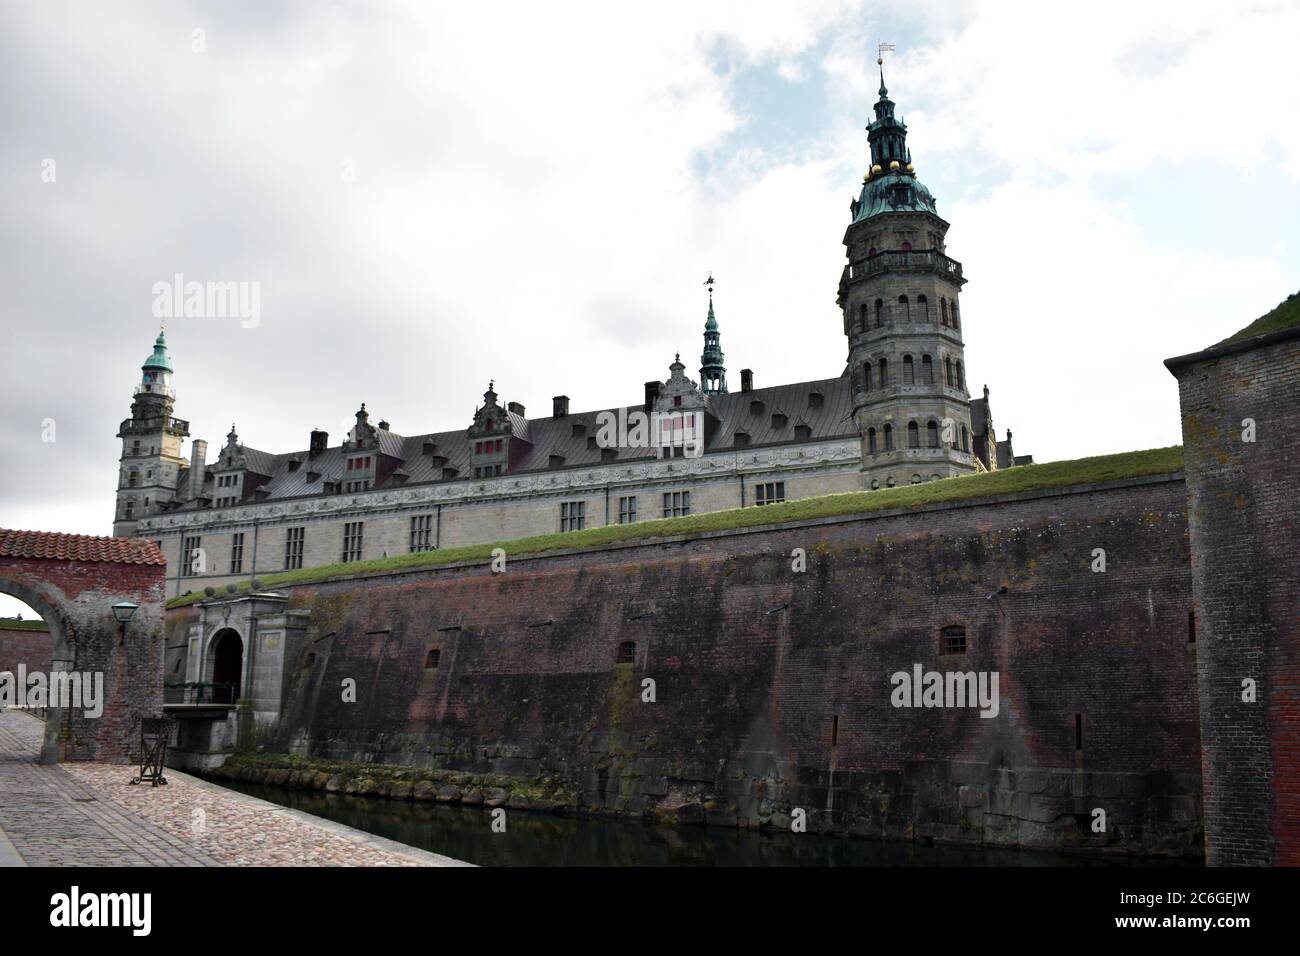 Blick auf Schloss Kronborg hinter den inneren Burgmauern und dem Burggraben. Berühmt als das Schloss aus Shakespeares Hamlet. Bewölktes Wetter in Dänemark. Stockfoto